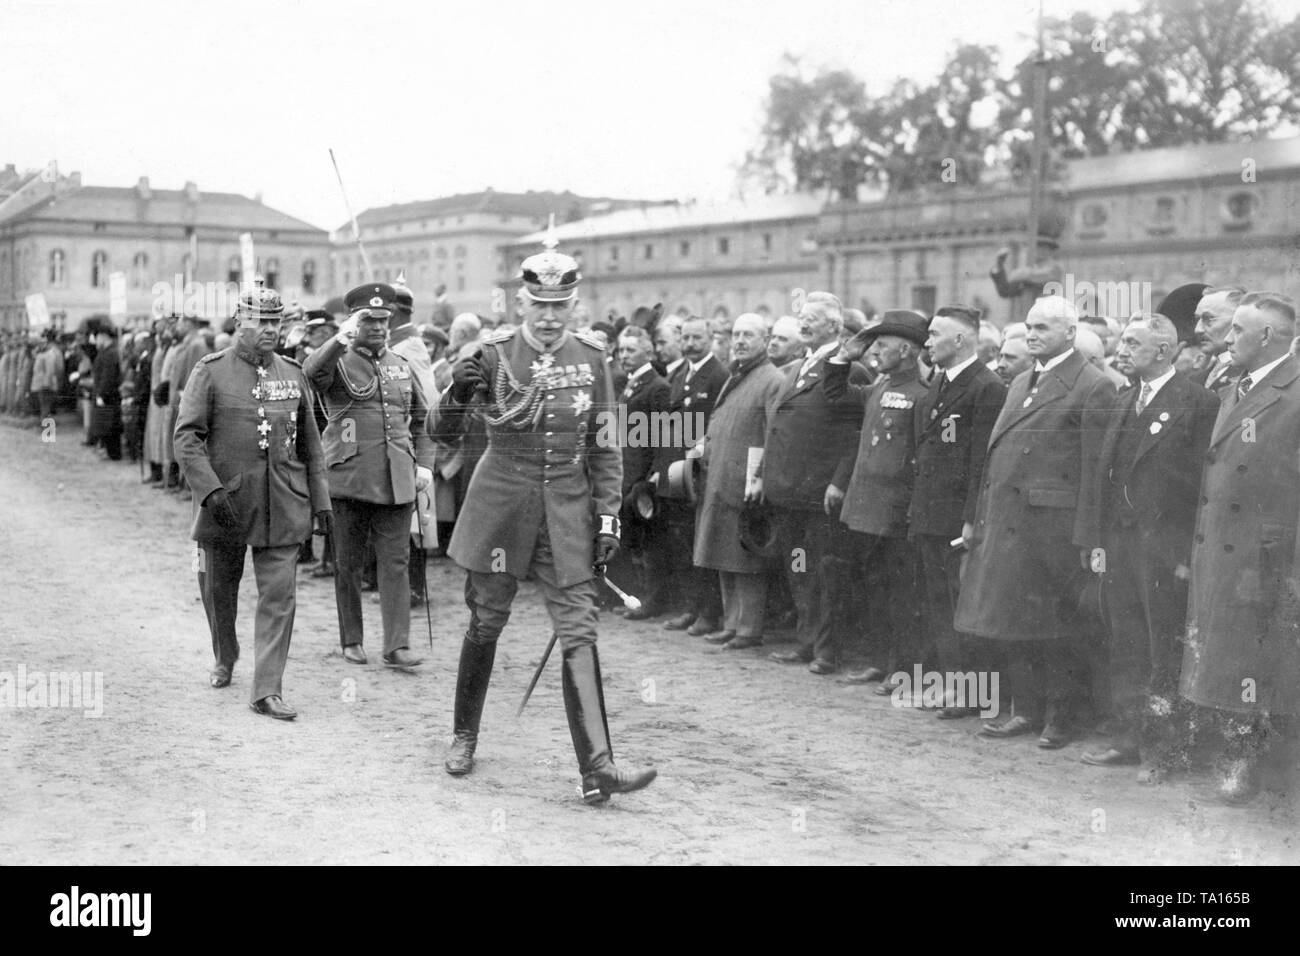 Der letzte Kommandant der Jaeger, Karl von Plettenberg, inspiziert seine aufgereiht Regimenter. Eine Sitzung des Gardeschuetzen wurde auch in Potsdam anlässlich des Deutschen Jaegertag organisiert. Stockfoto